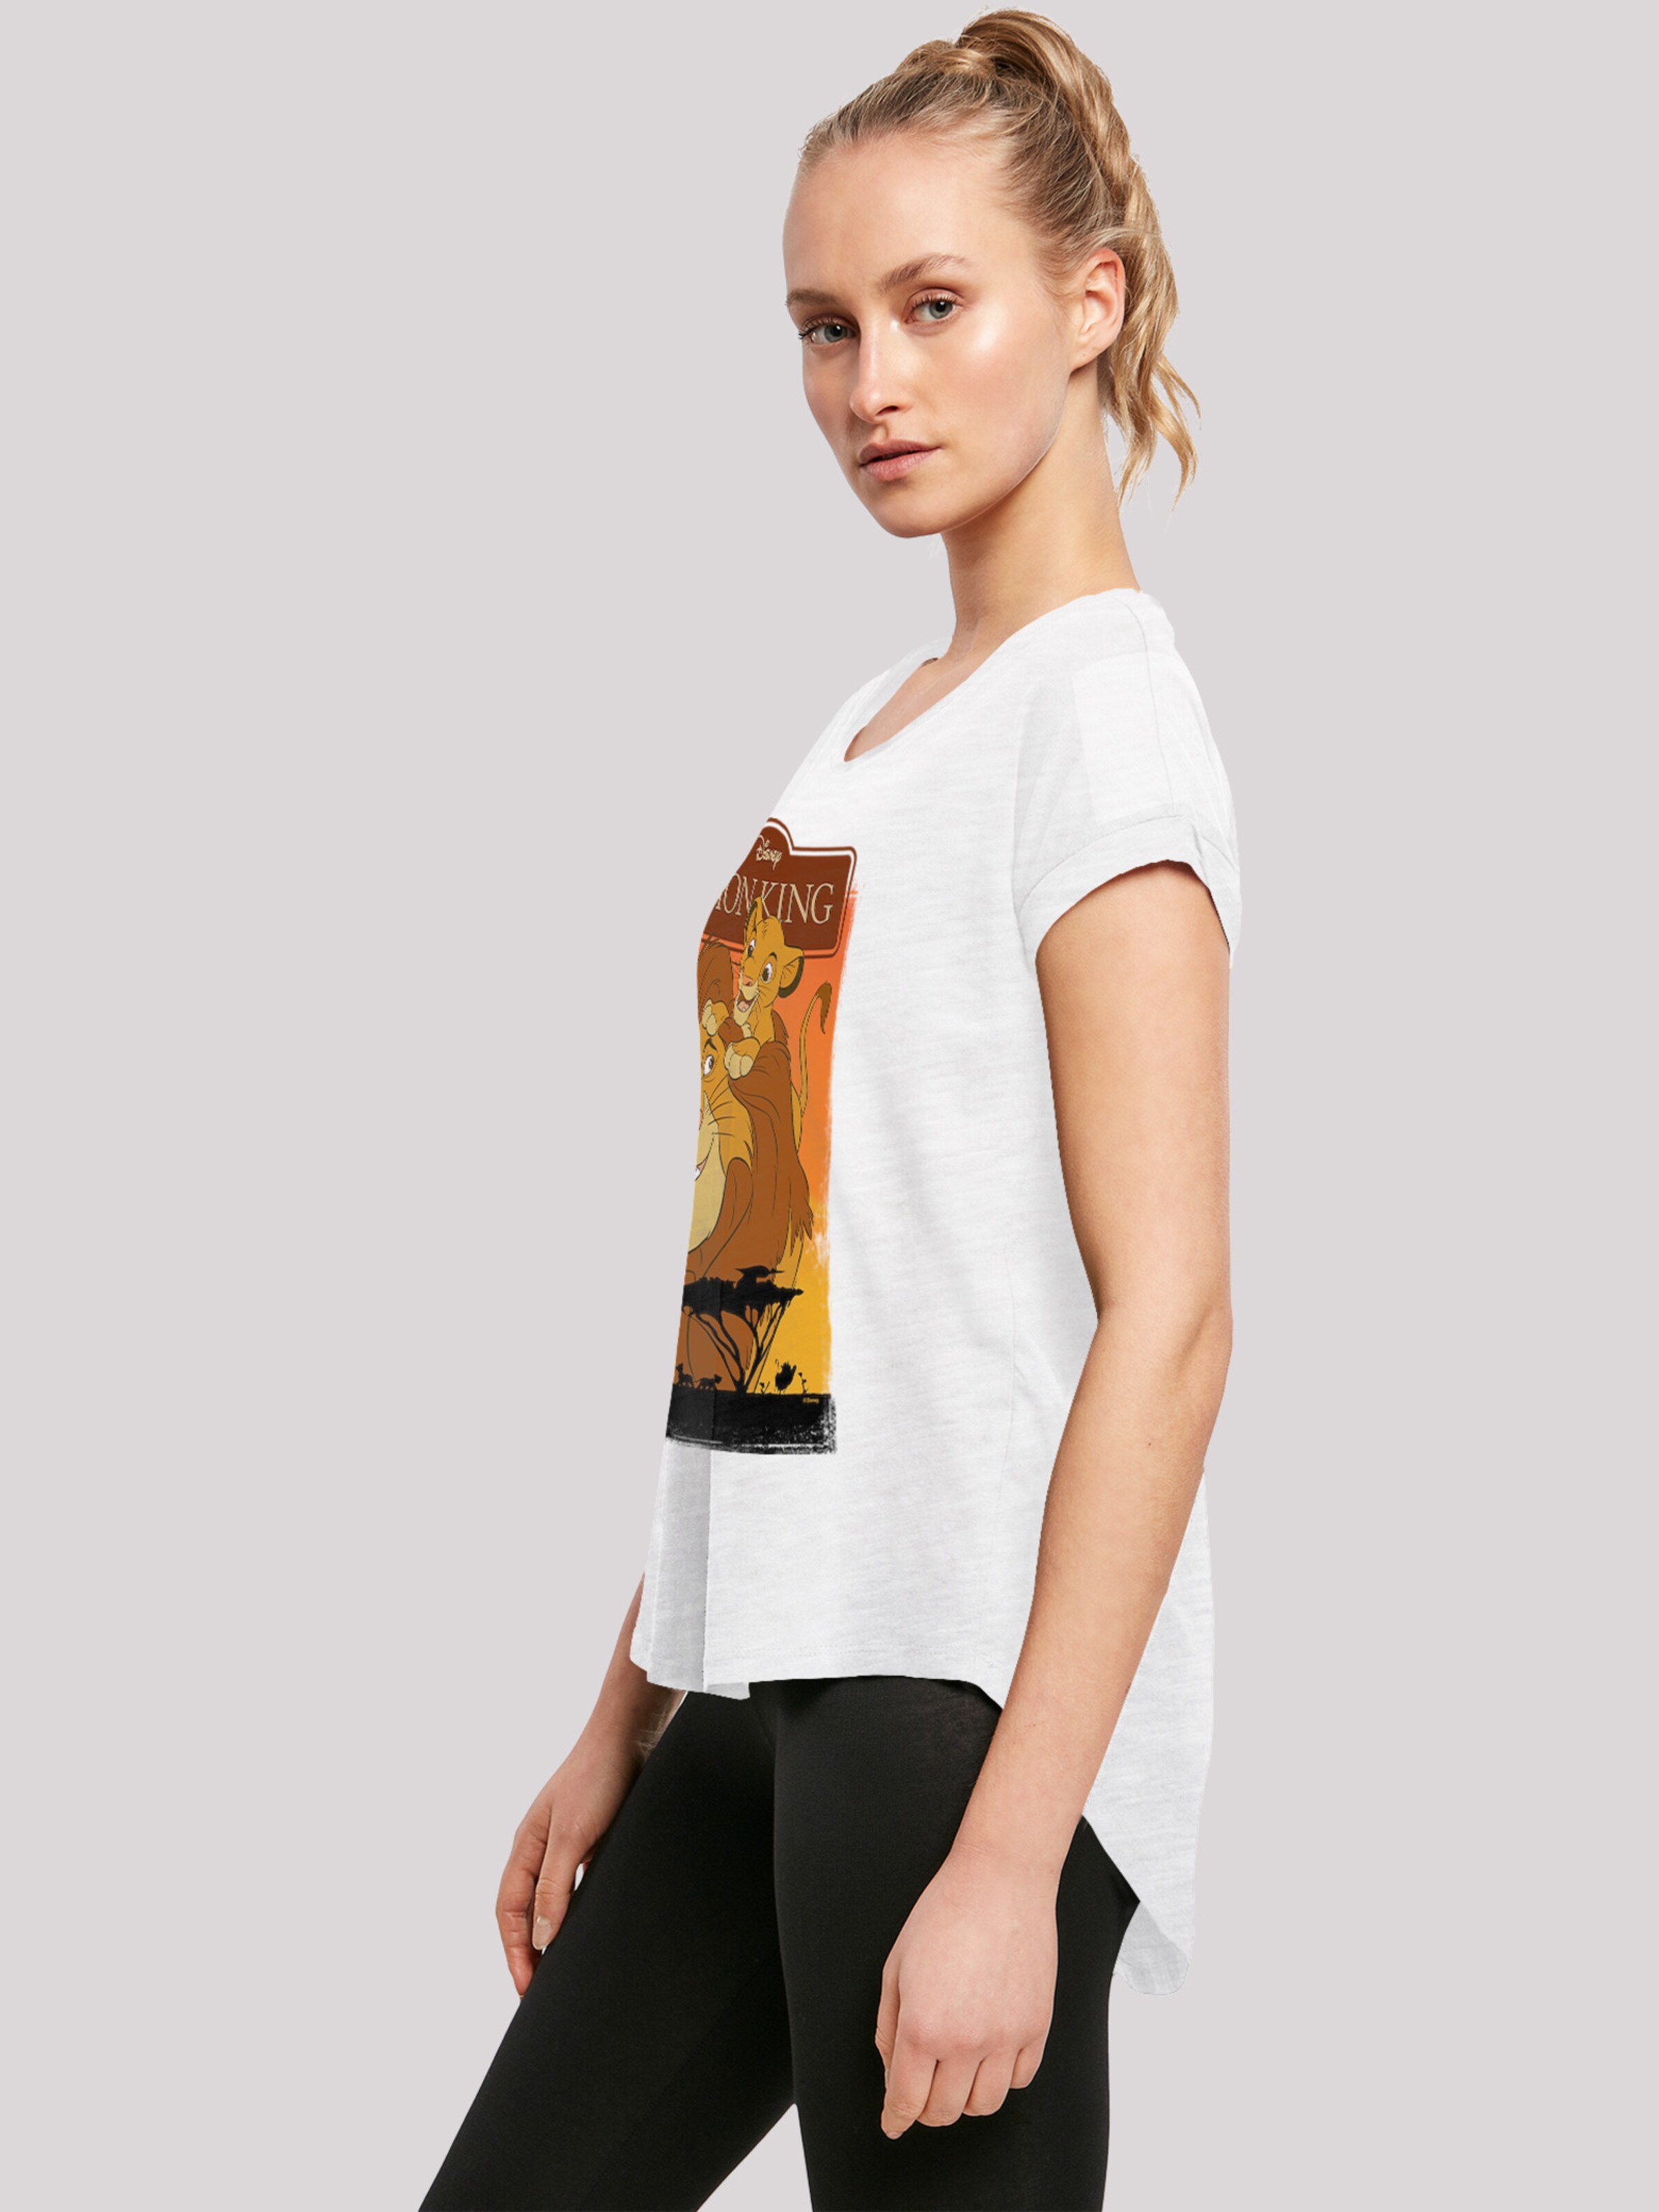 Frauen Shirts & Tops F4NT4STIC T-Shirt 'Der König der Löwen' in Weiß - KD25314